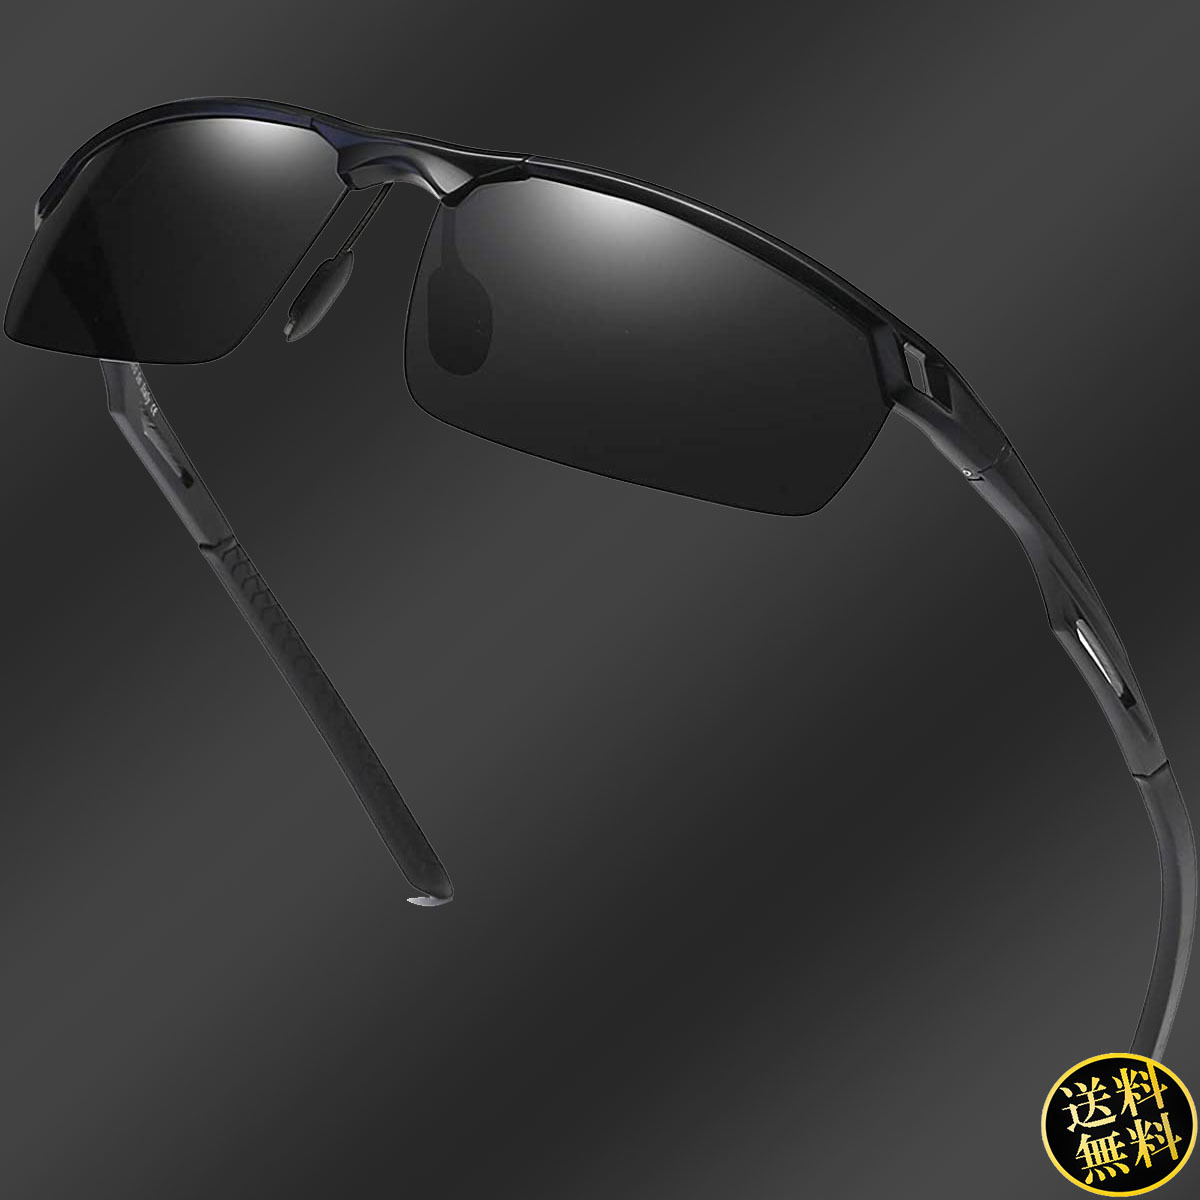 【超軽量フレーム】 スポーツサングラス ブラックフレーム TAC偏光レンズ UV400保護コーティング 日本人顔 ファッション メンズ ドライブ